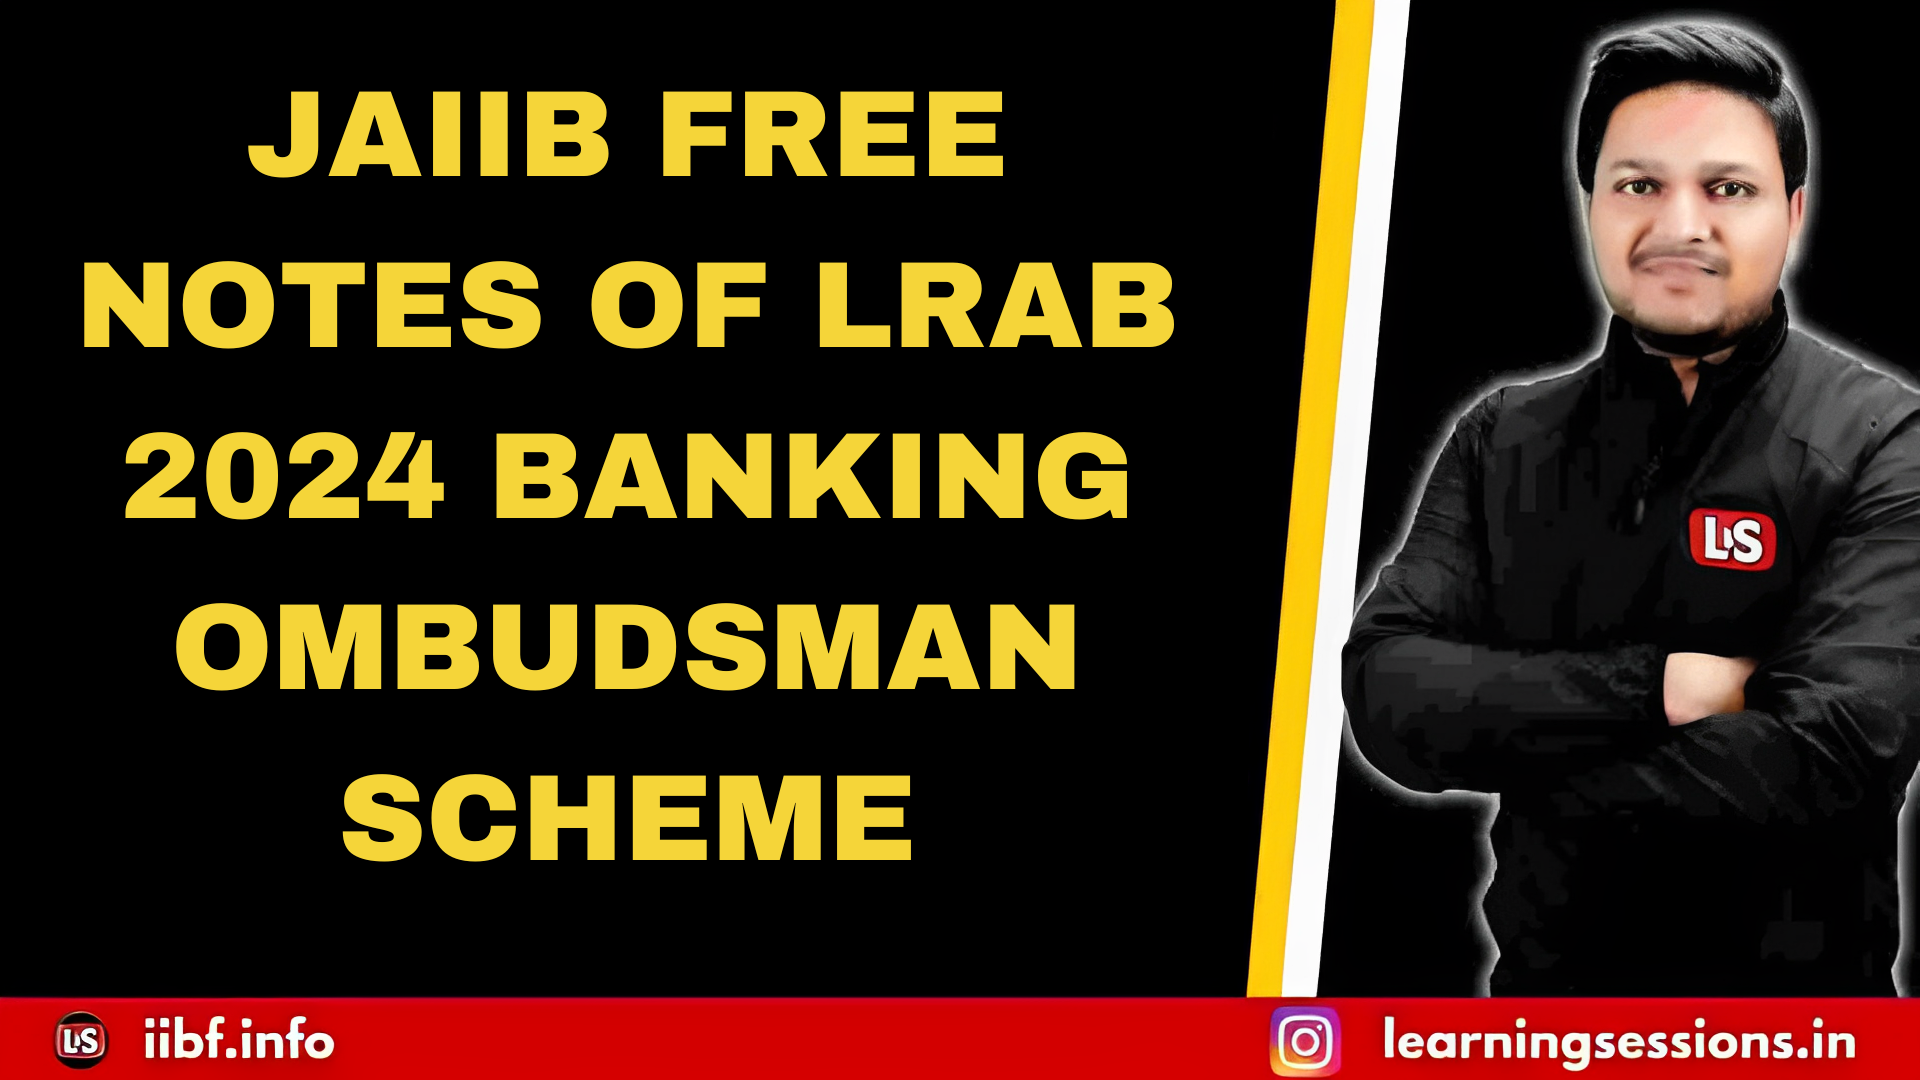 JAIIB FREE NOTES OF LRAB 2024 BANKING OMBUDSMAN SCHEME